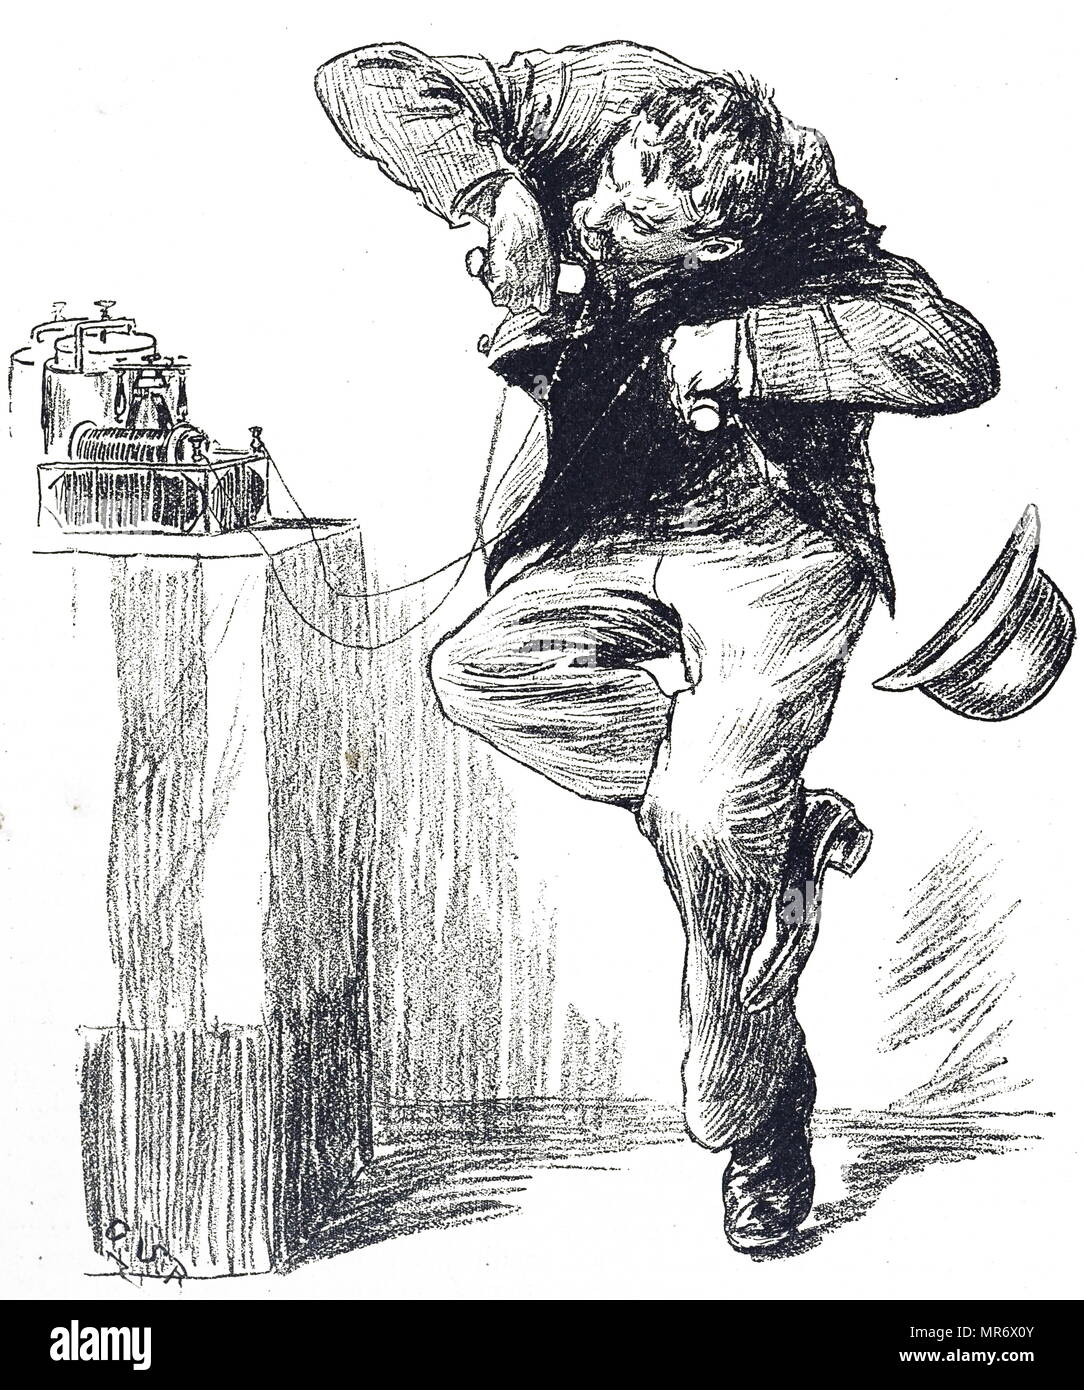 Grabado representando a un hombre que tenía una vuelta sobre la batería galvánica que sorprendería a la persona que lo posee. Fecha del siglo XIX Foto de stock